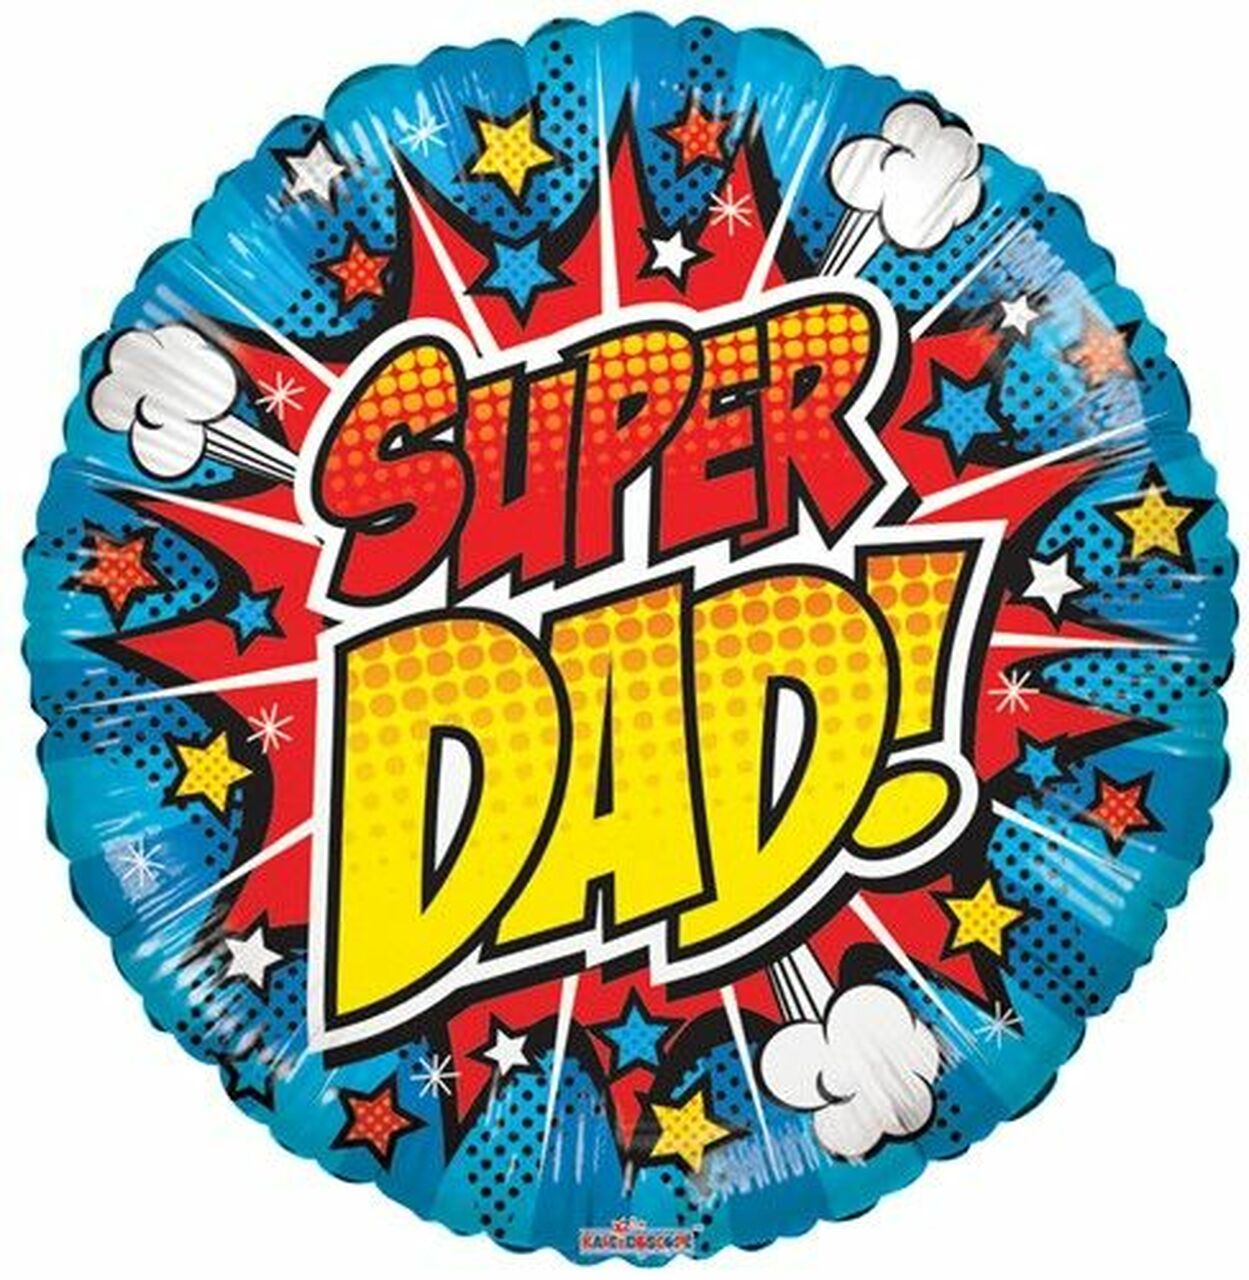 Super Dad Balloon